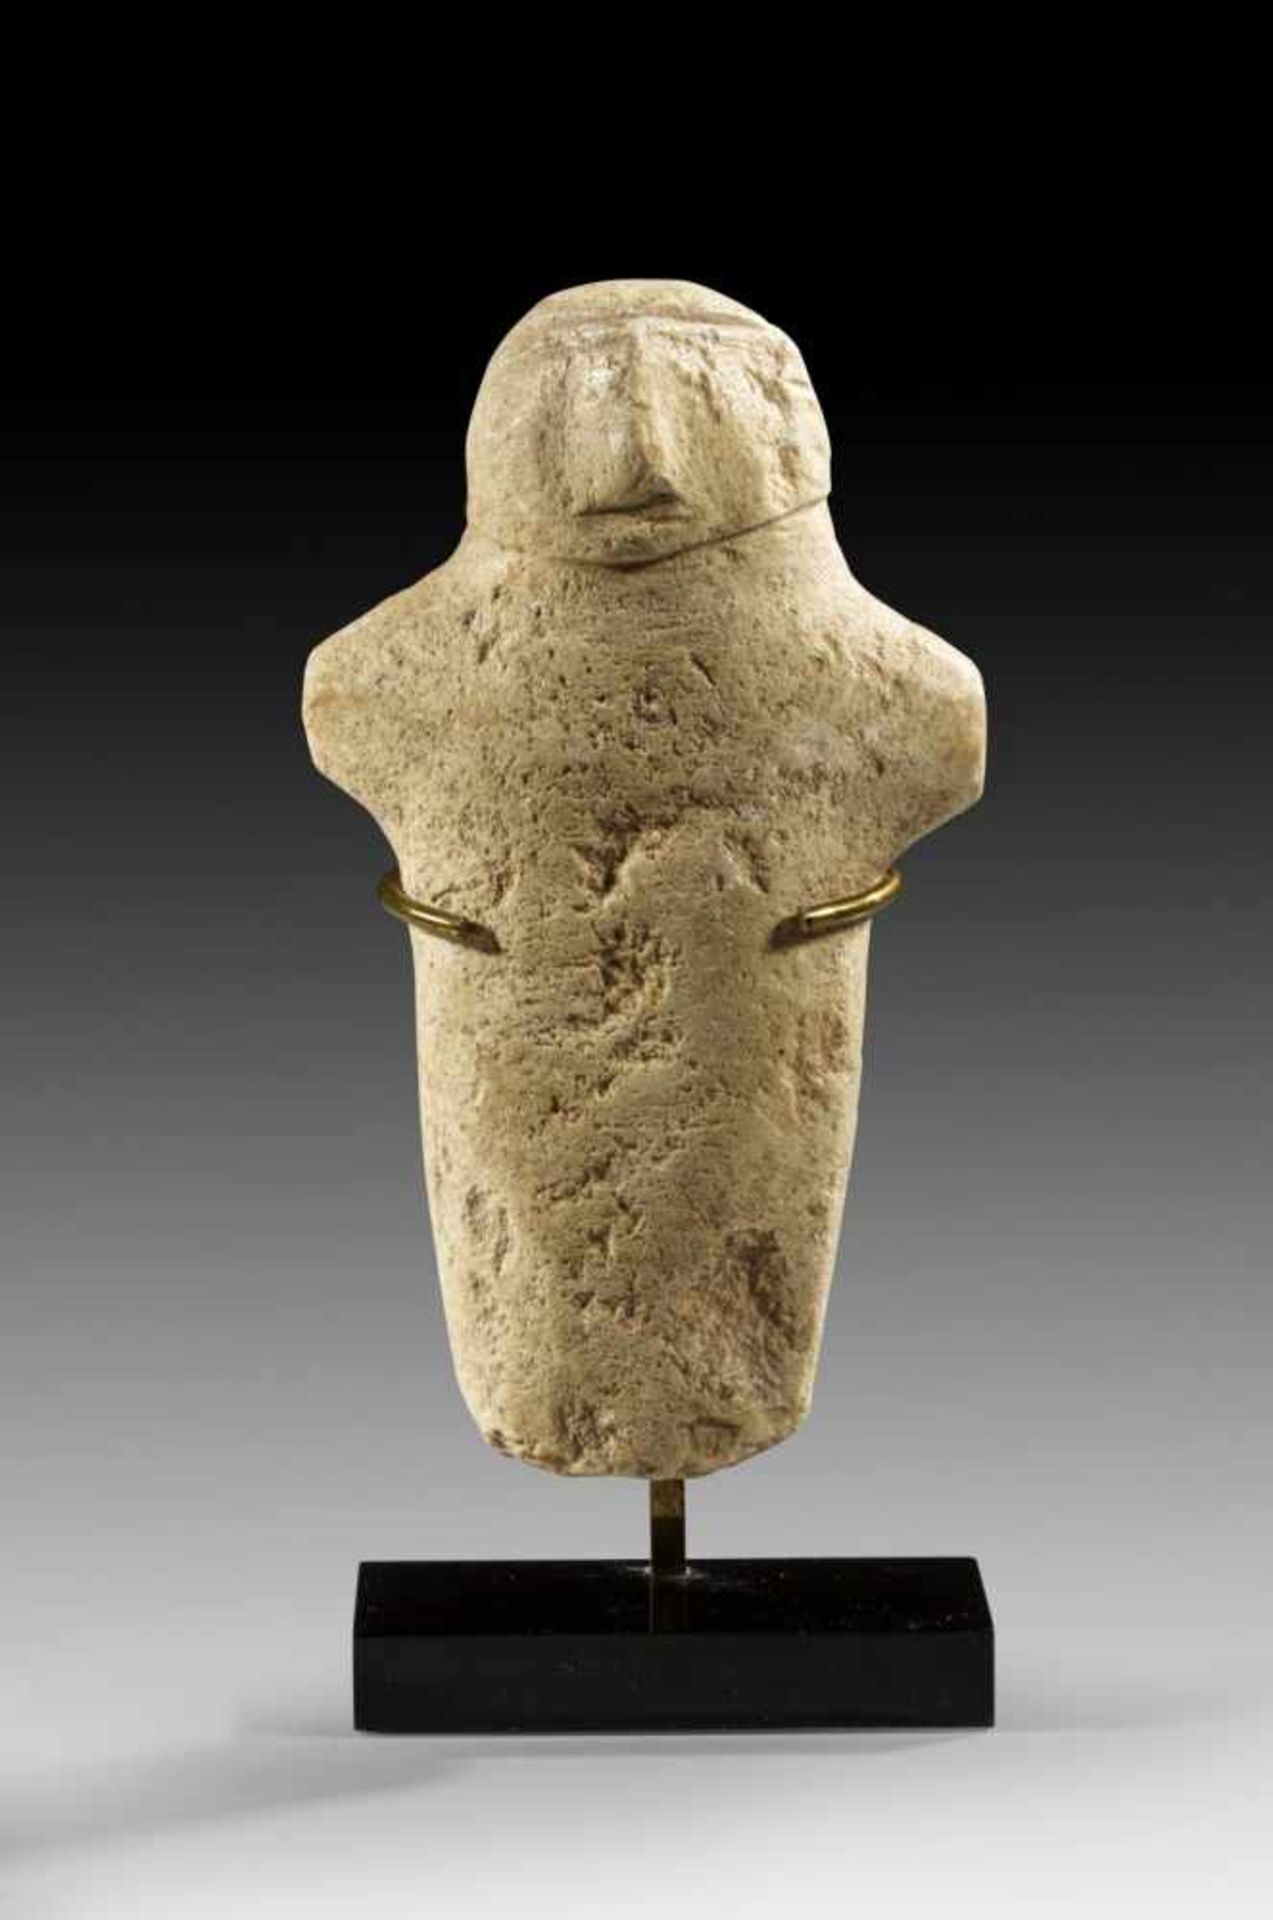 Idol. Baktrien, 2 Jt. v. Chr. L 12,8cm. Kalzit. Stark stilisiertes Idol mit zylindrischem Corpus und